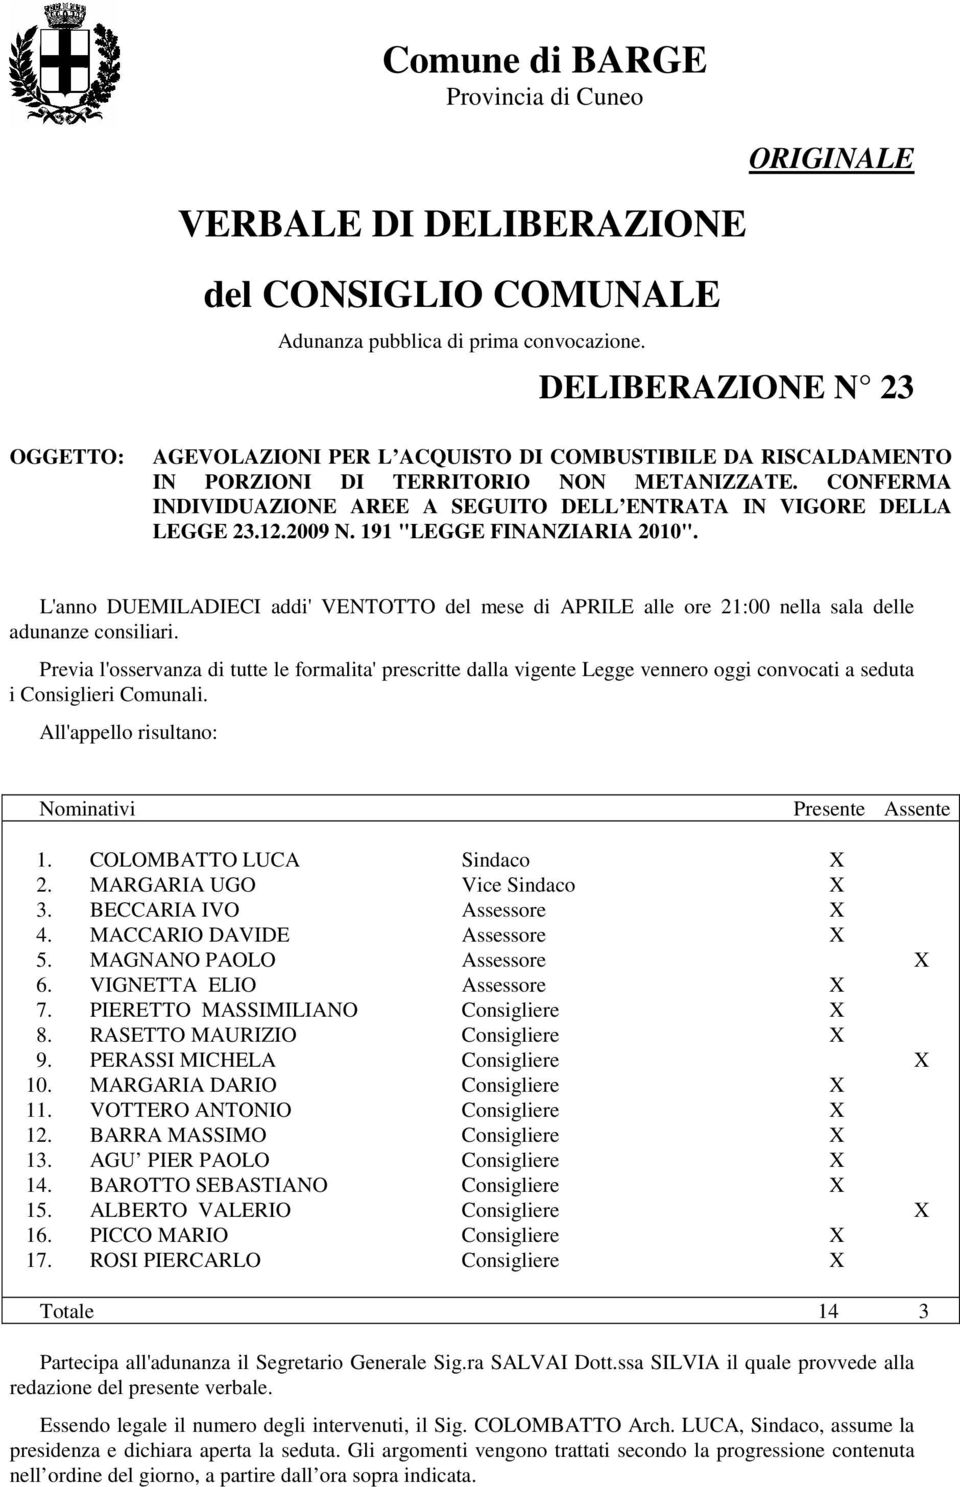 CONFERMA INDIVIDUAZIONE AREE A SEGUITO DELL ENTRATA IN VIGORE DELLA LEGGE 23.12.2009 N. 191 "LEGGE FINANZIARIA 2010".